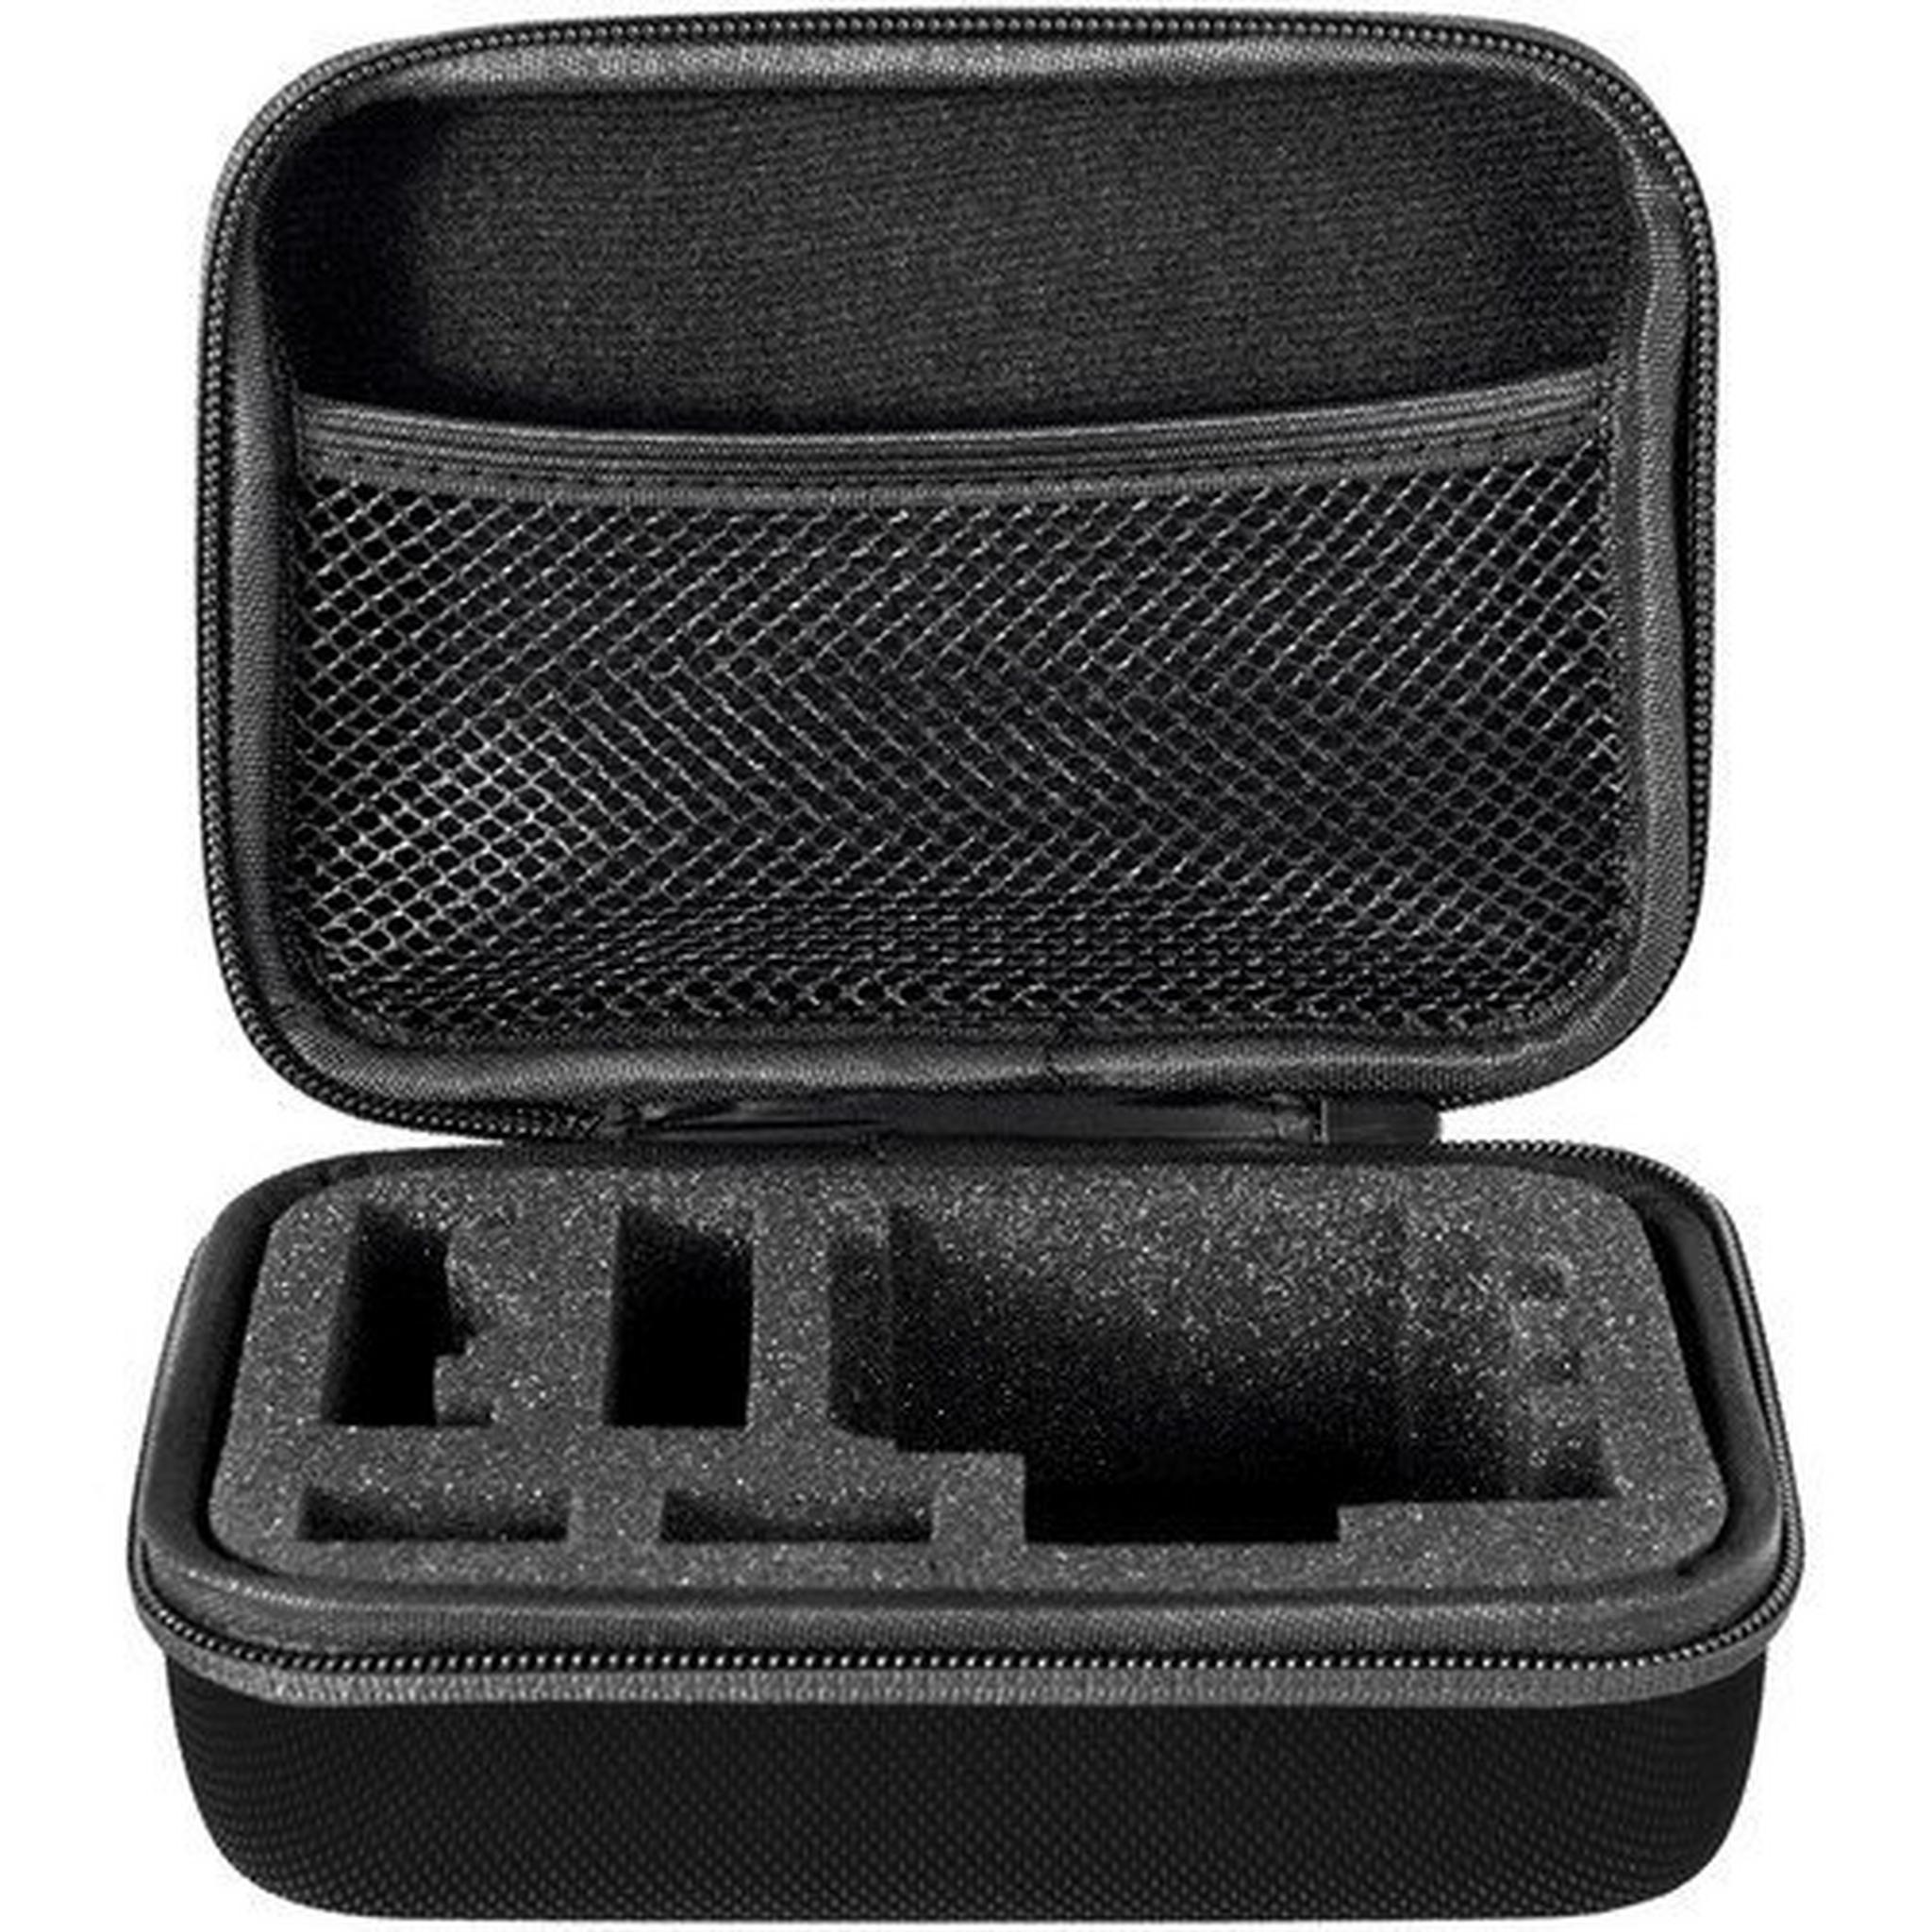 حقيبة الكاميرا جو برو من بوير حجم صغير- أسود